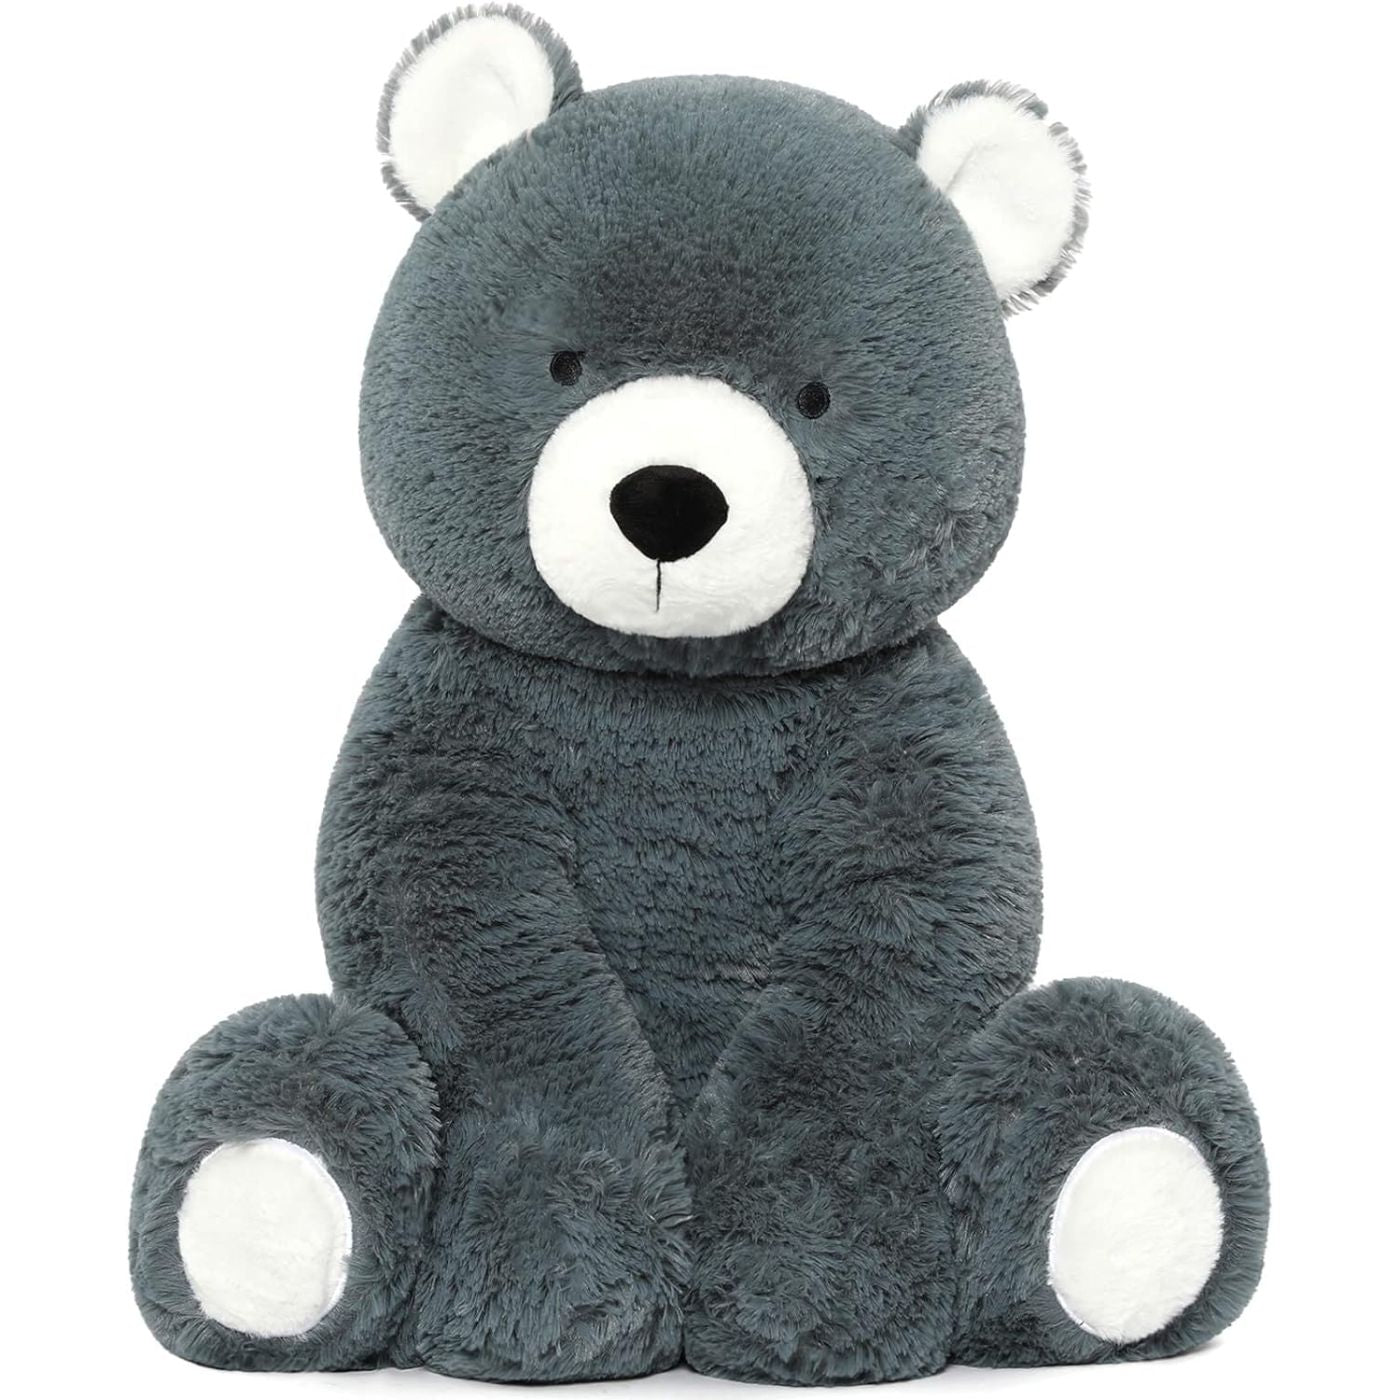 Teddy Bear Stuffed Animal Toy, 18 Inches